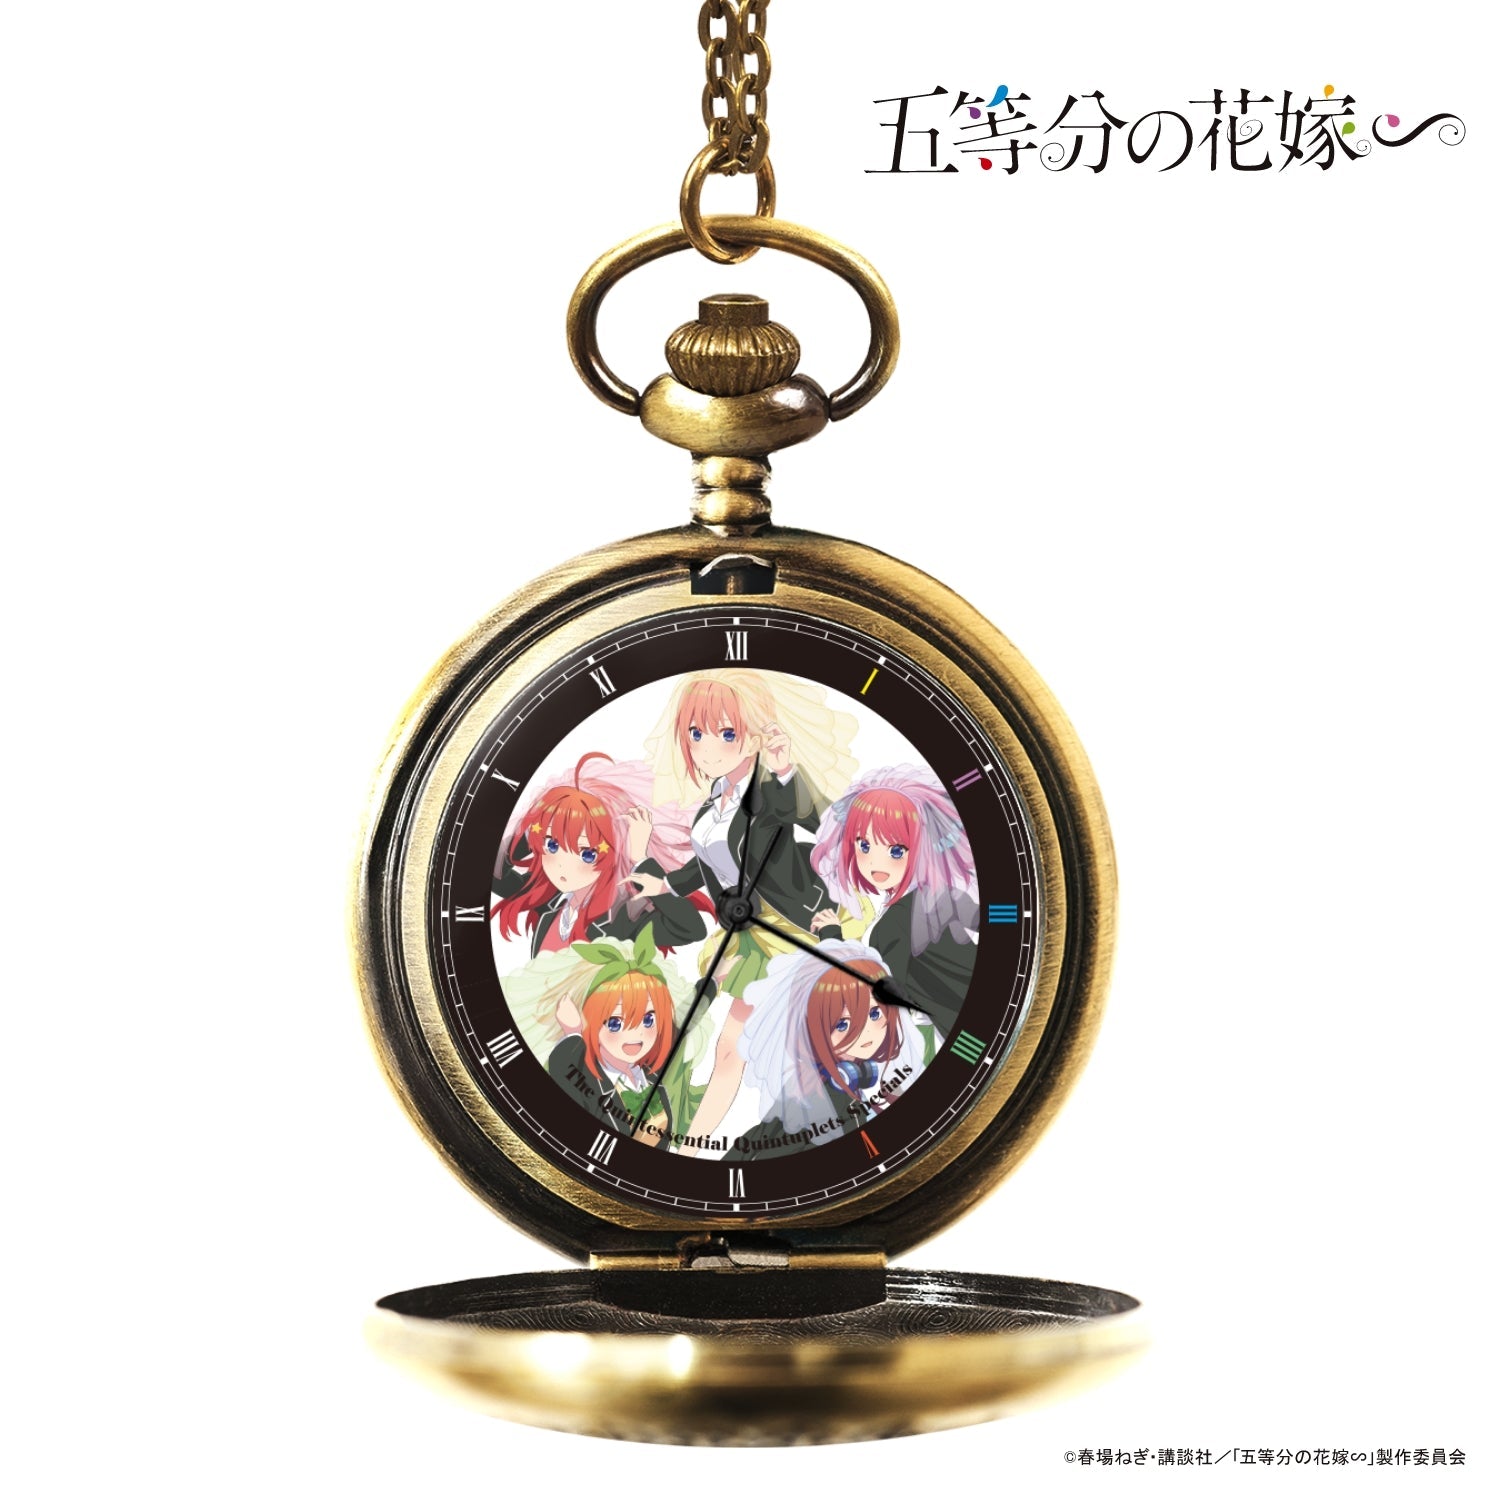 「五等分の花嫁∽」懐中時計| 集合 - 公式通販サイト「アニメコレクション/Anime Collection」